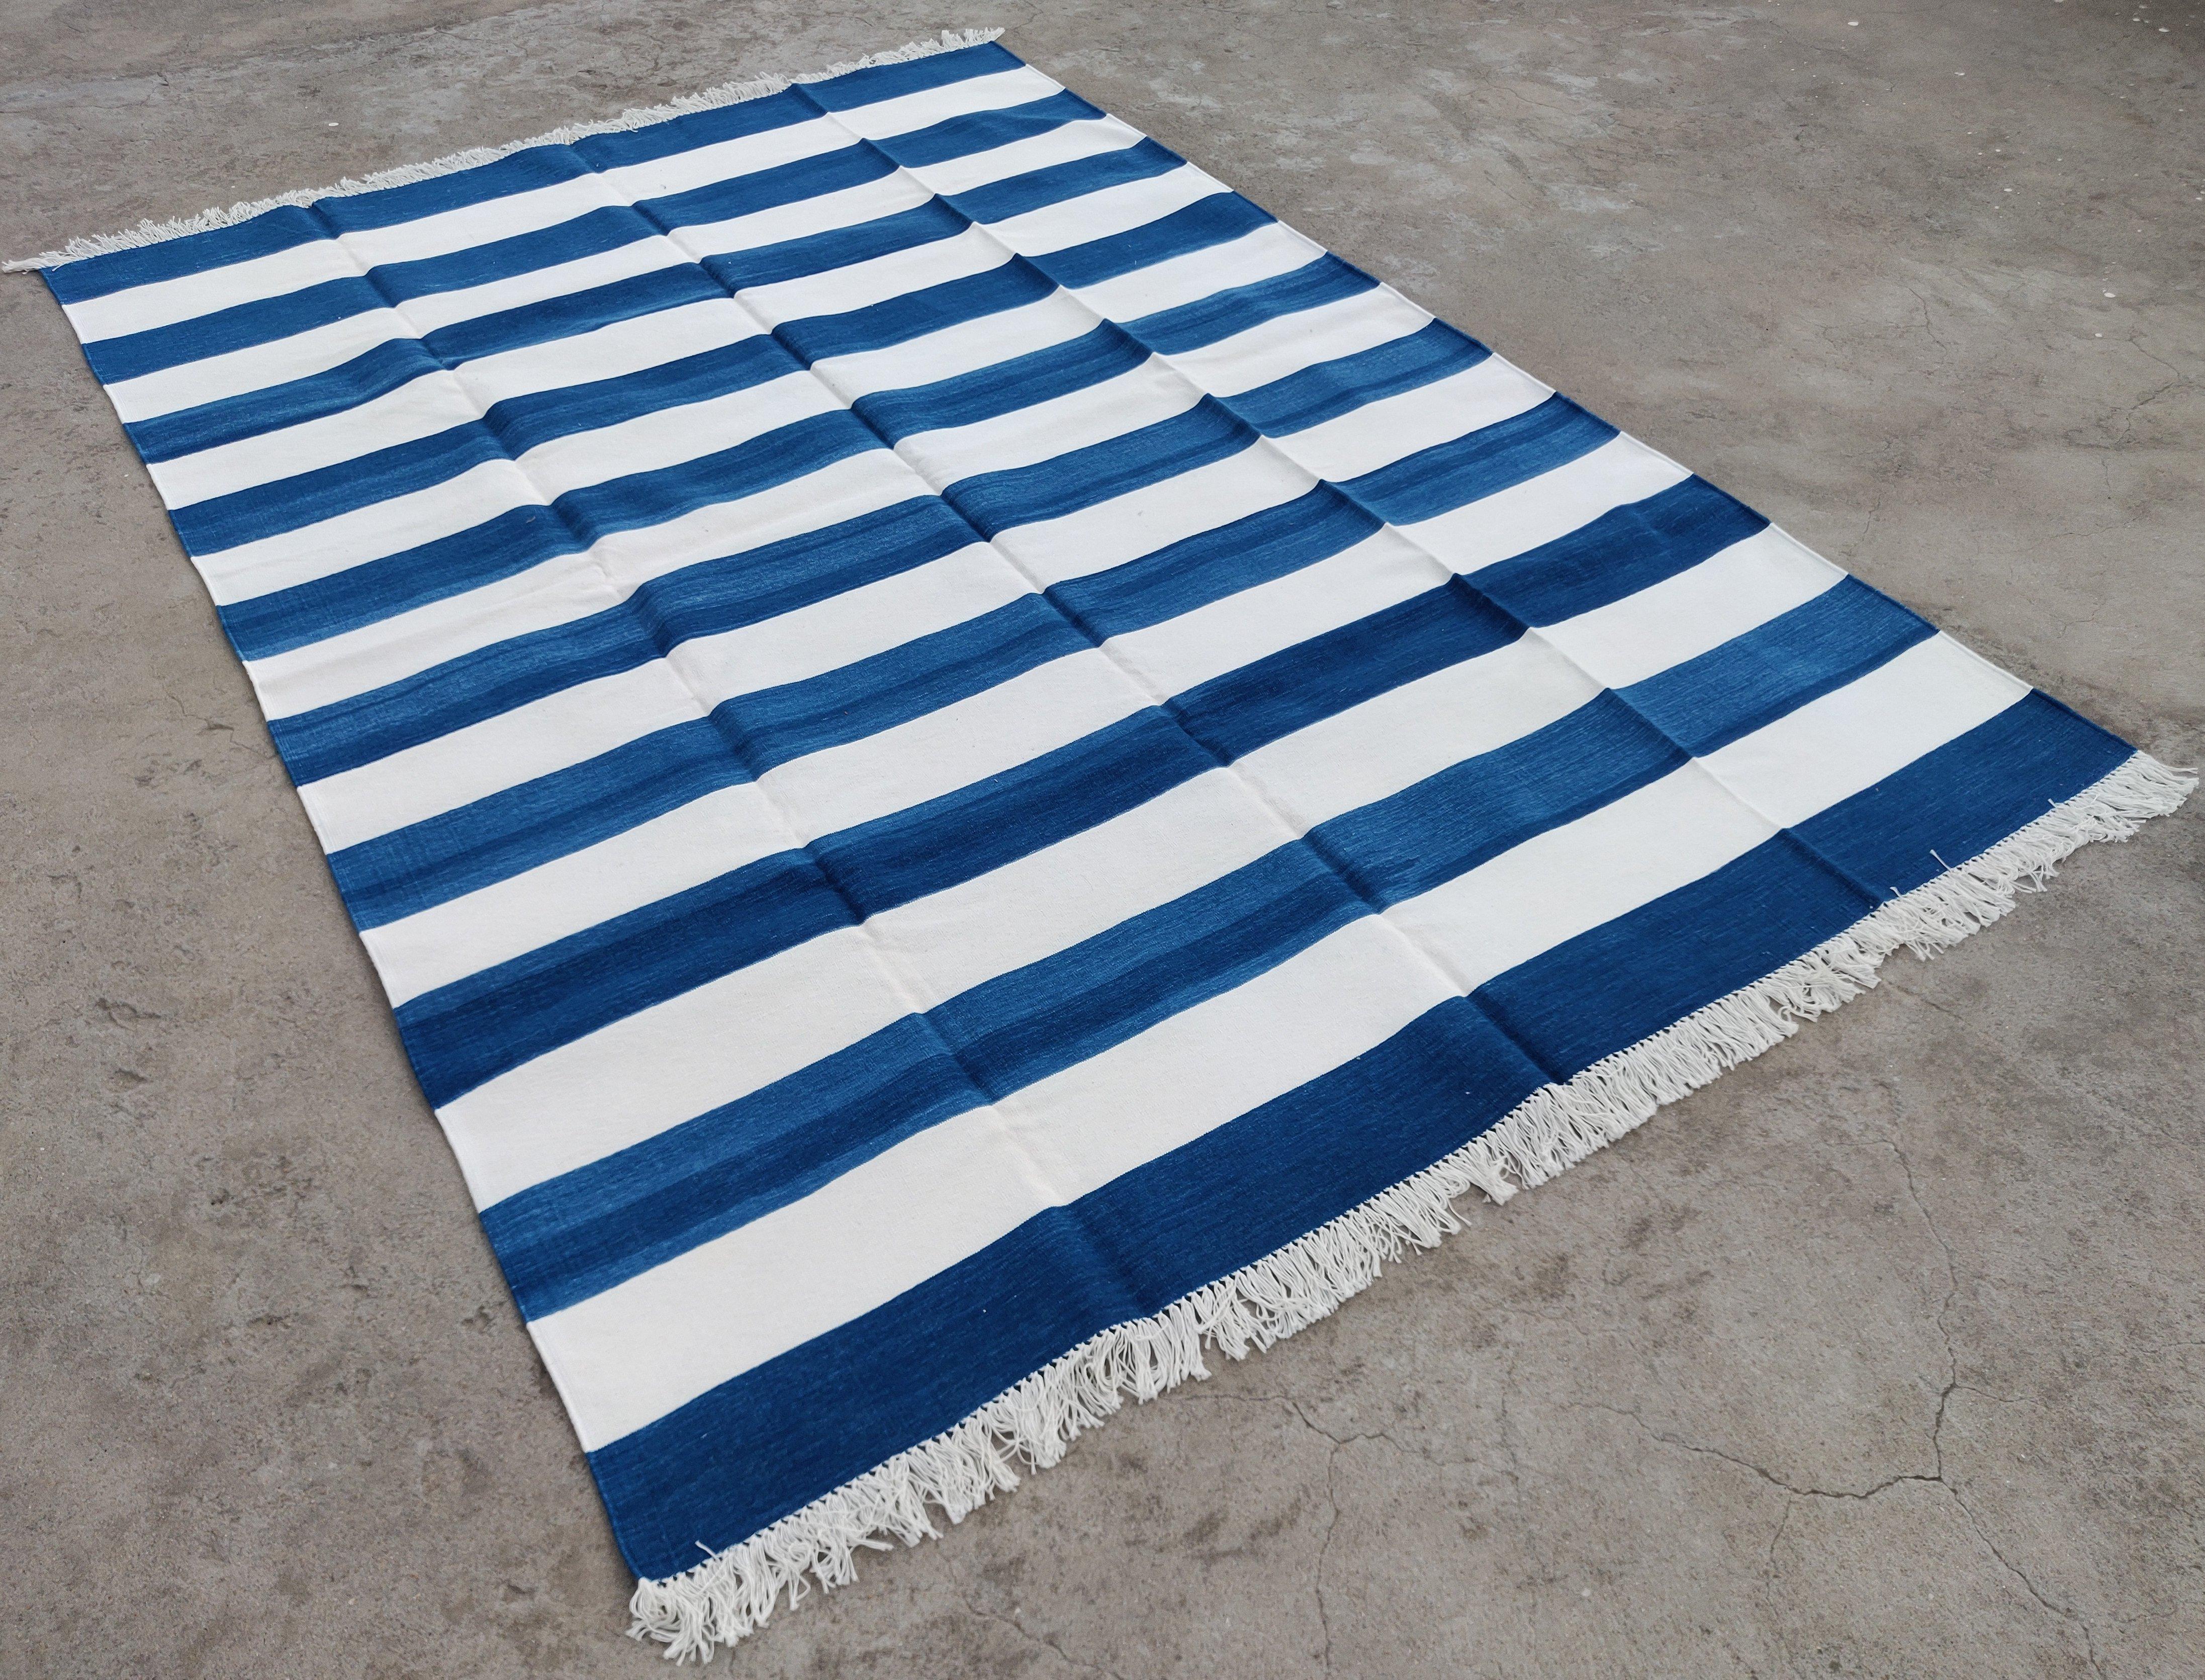 Baumwolle pflanzlich gefärbt Indigo blau und weiß gestreift indischen Dhurrie Teppich-6'x9' 

Diese speziellen flachgewebten Dhurries werden aus 15-fachem Garn aus 100% Baumwolle handgewebt. Aufgrund der speziellen Fertigungstechniken, die zur